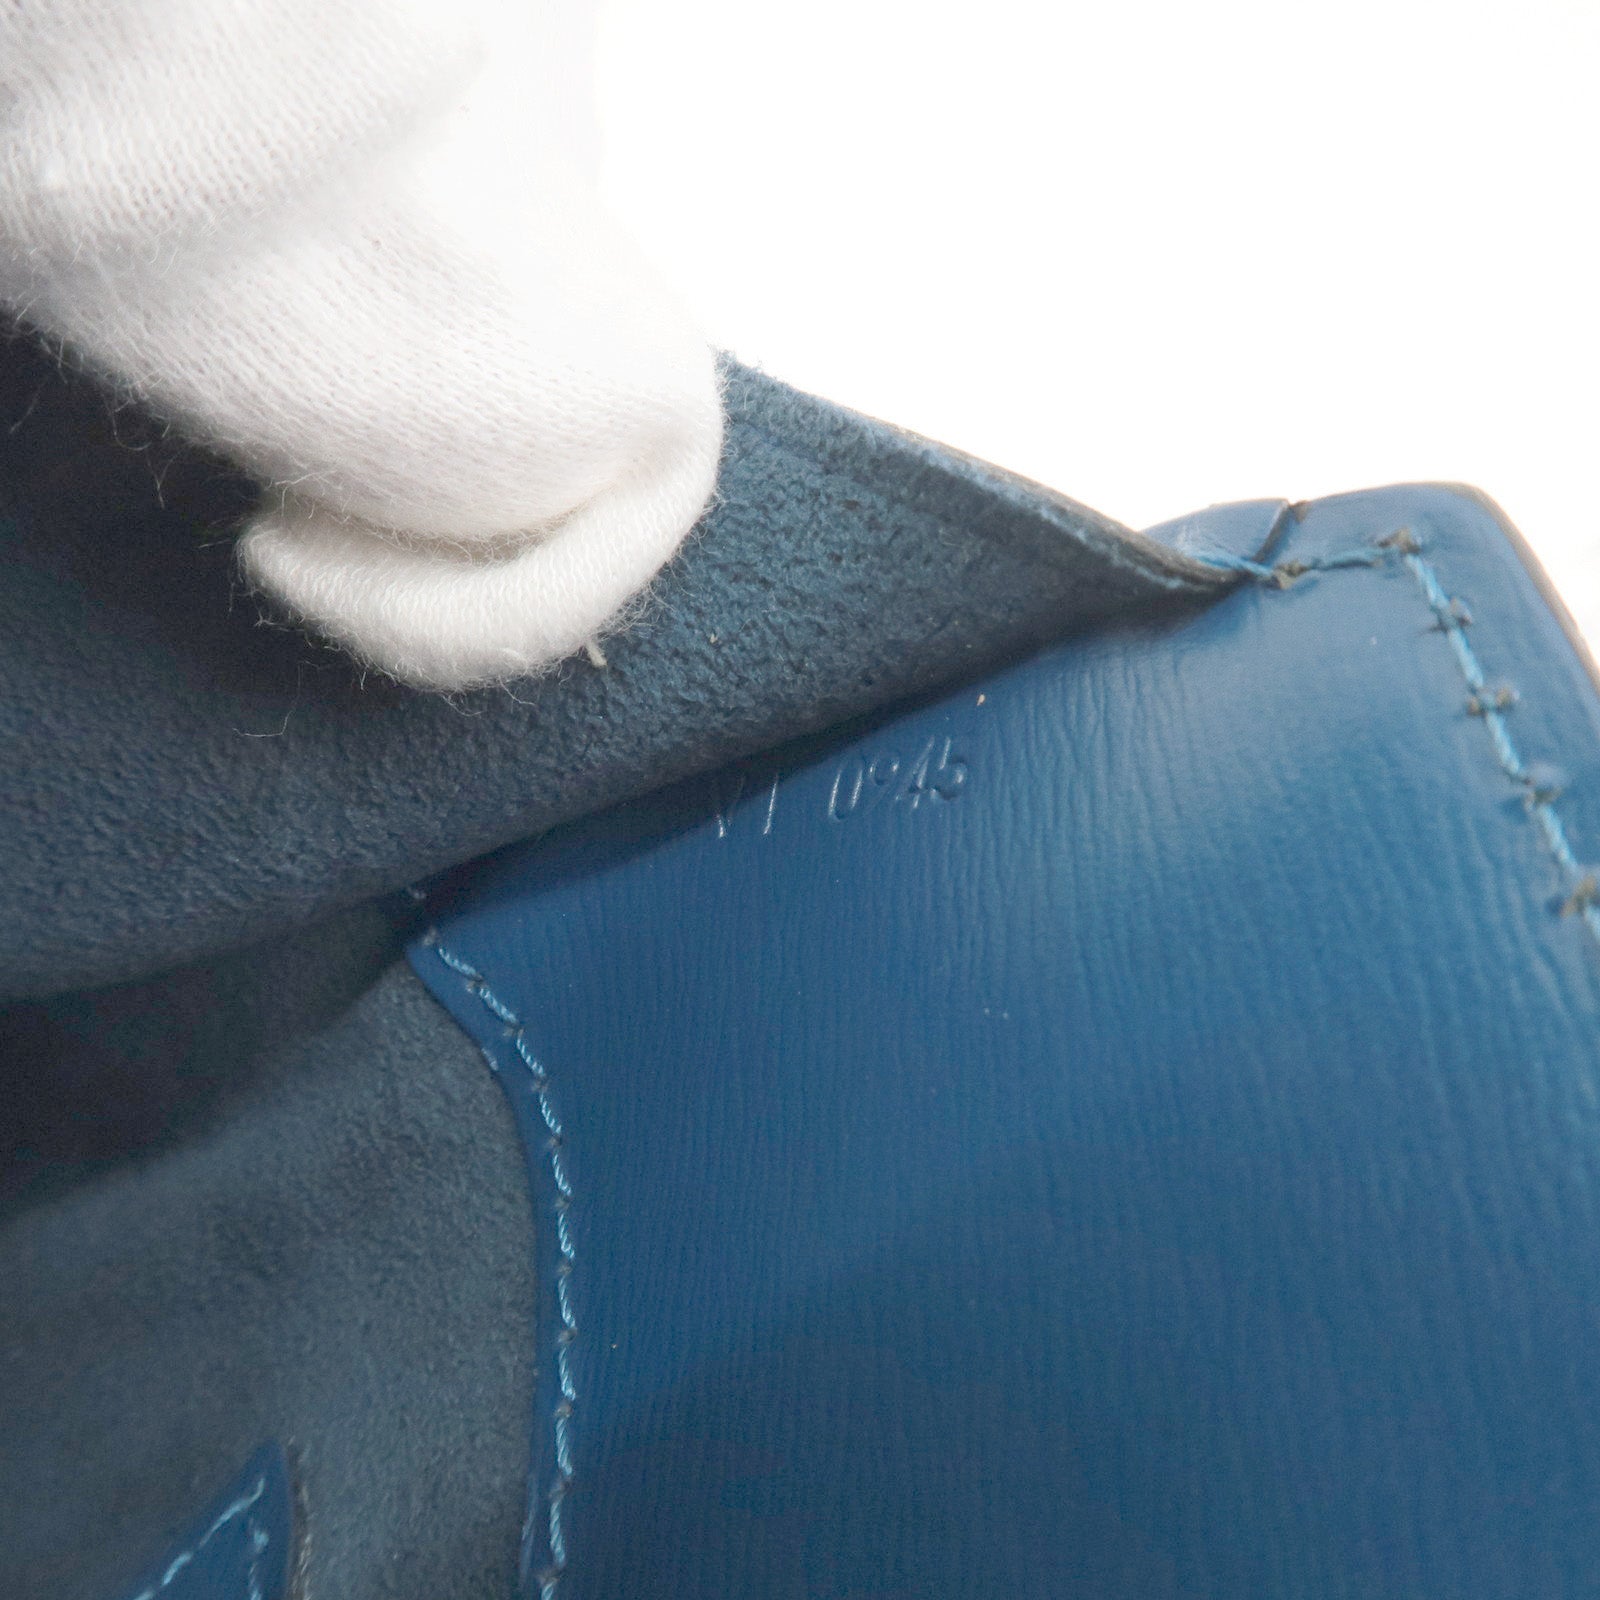 Louis Vuitton, Bags, Louis Vuitton Epi Cluny One Shoulder Bag M52255 Toledo  Blue Leather Ladies